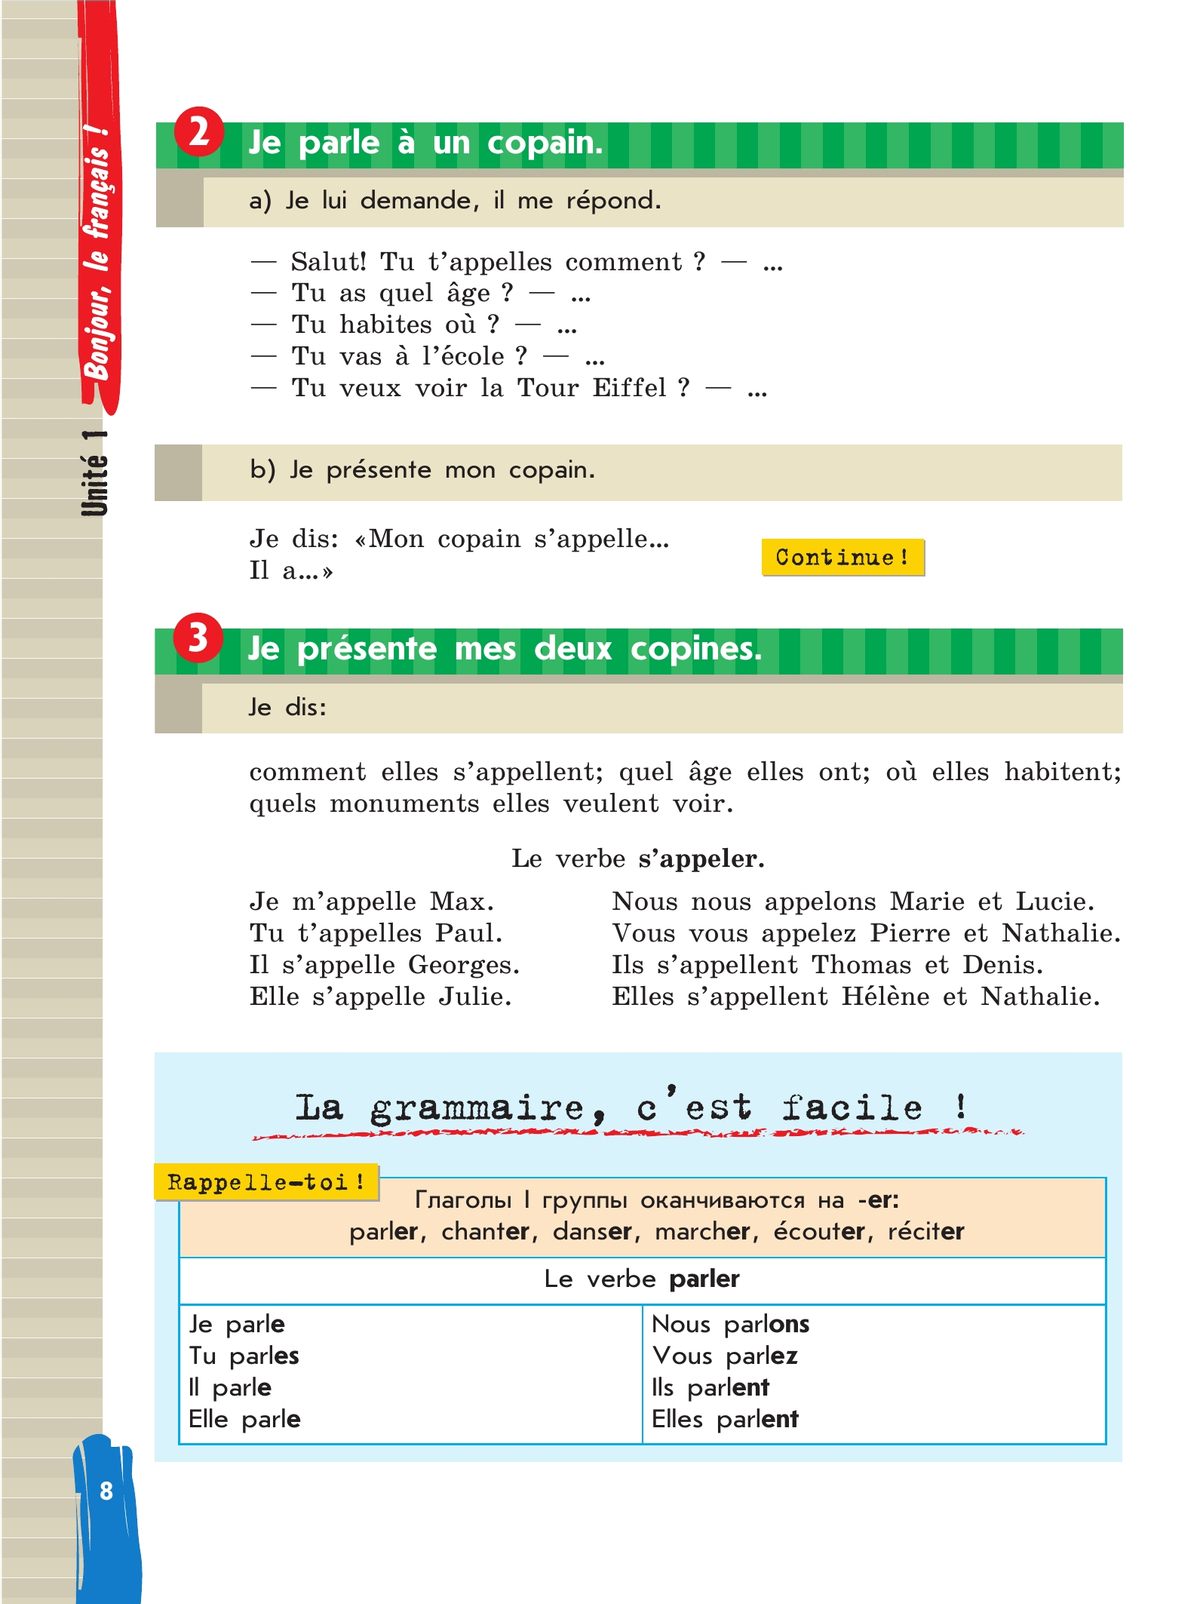 Французский язык. 5 класс. Учебник. В 2 ч. Часть 1 9